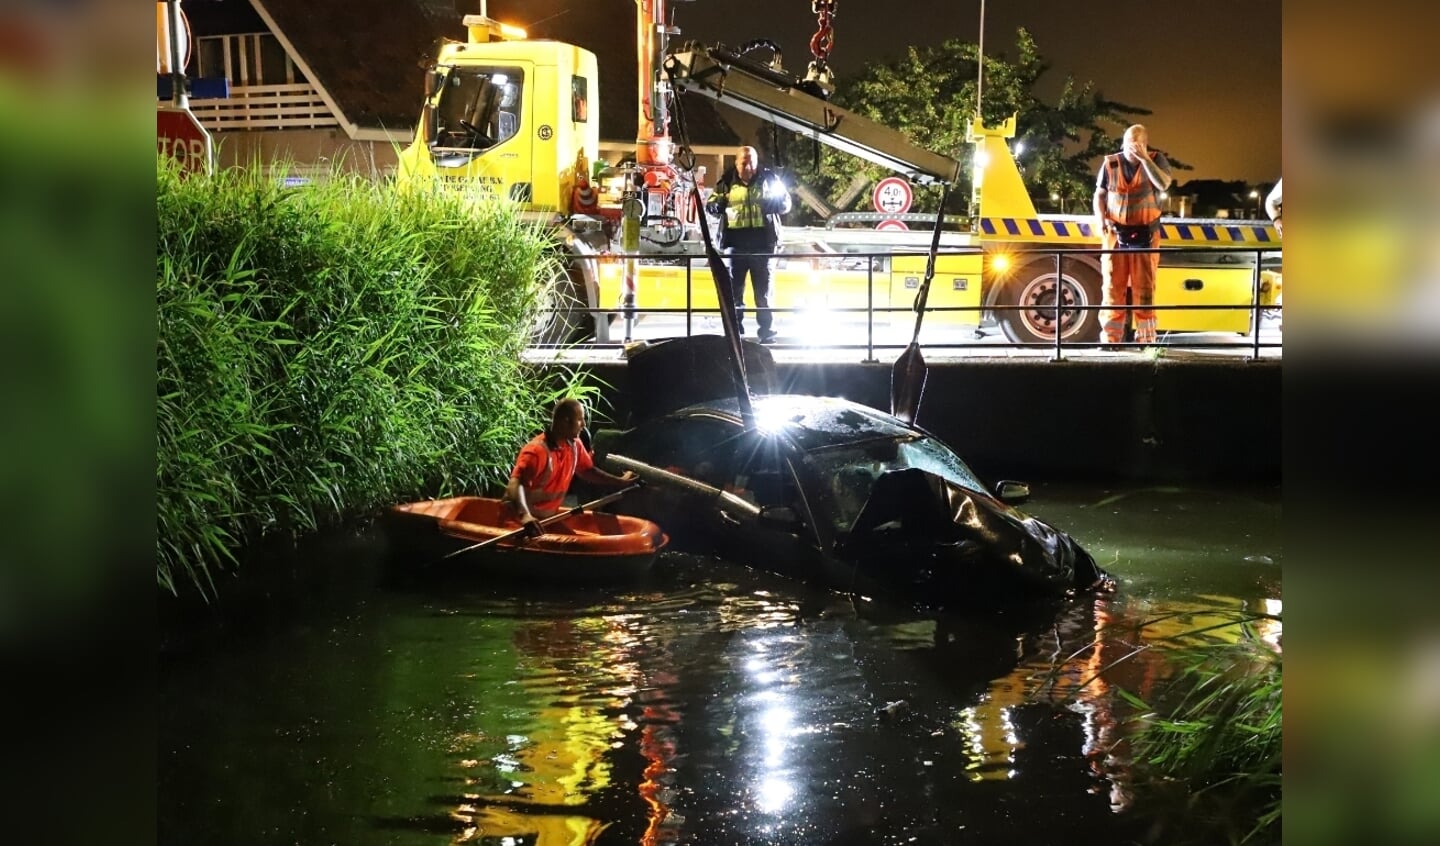 De auto wordt uit het water getakeld. (Foto: Spa Media)